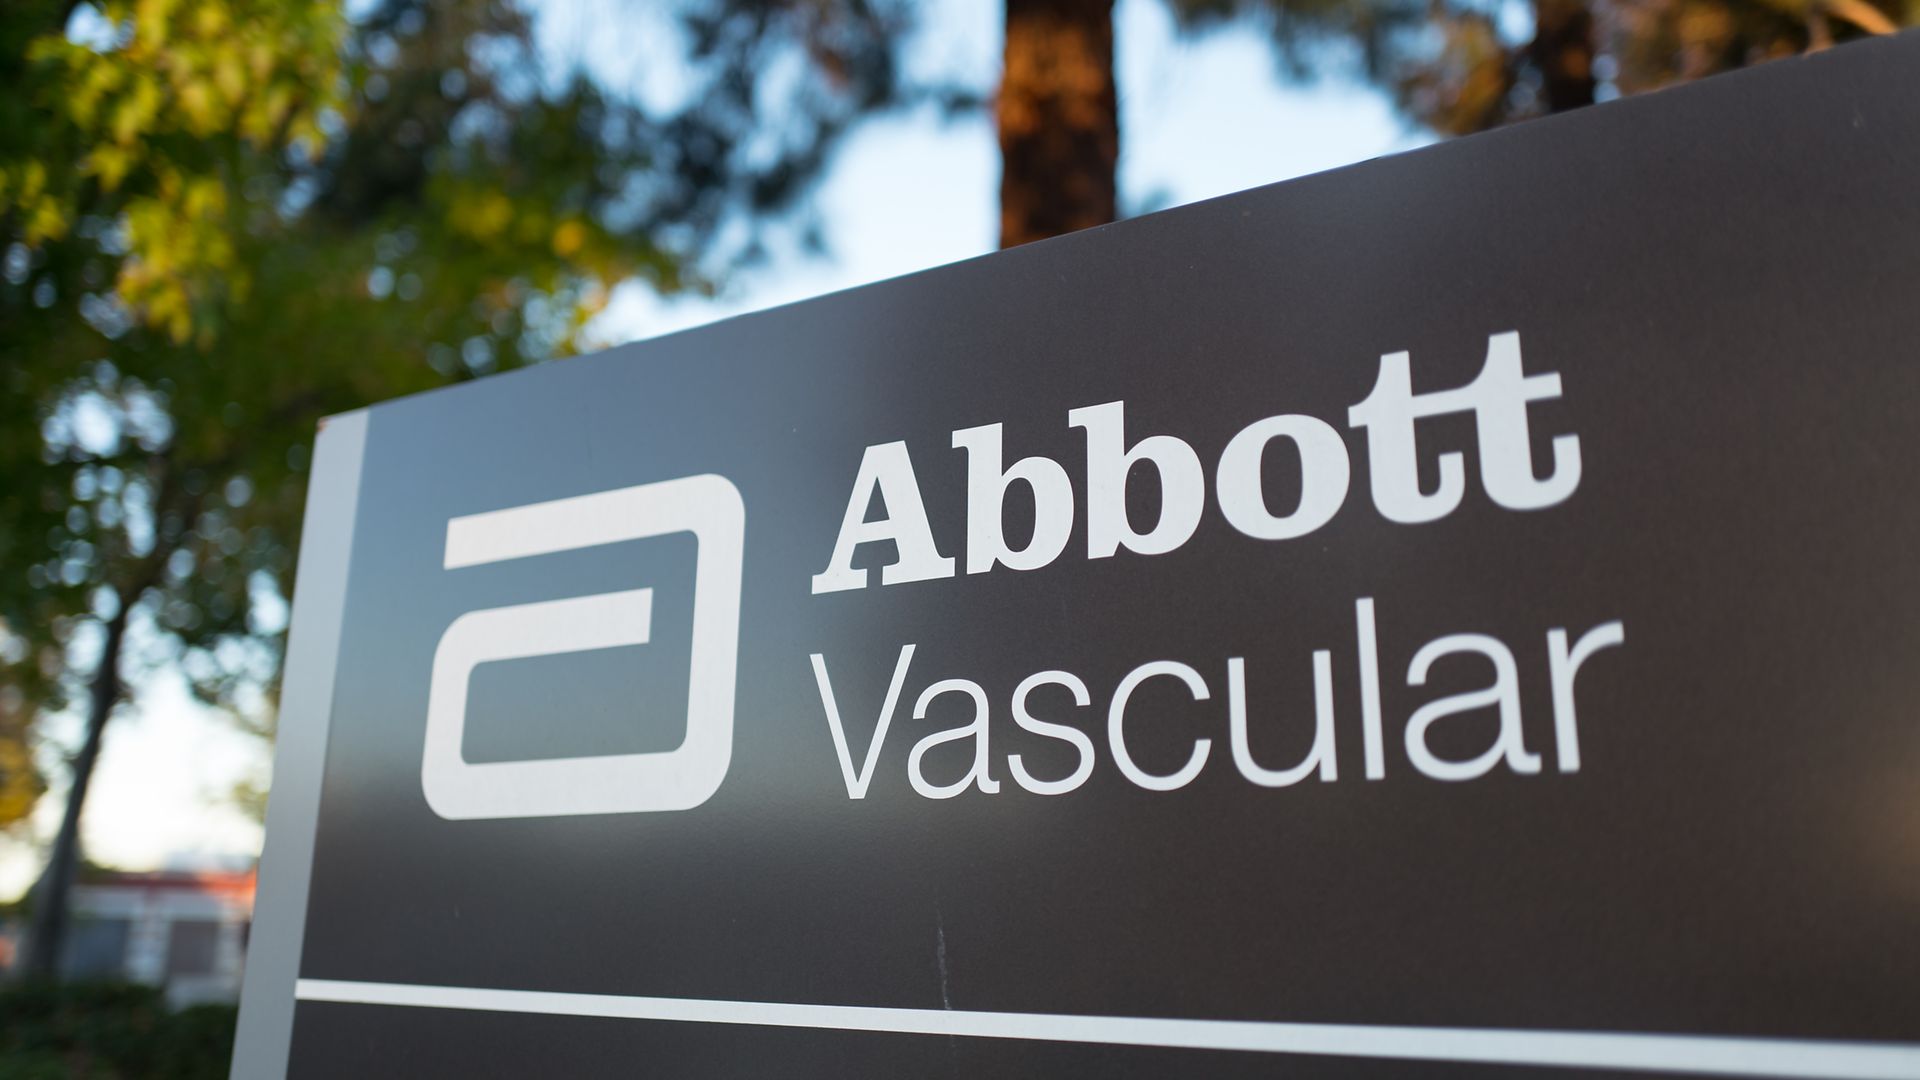 The headquarters sign of Abbott Vascular.